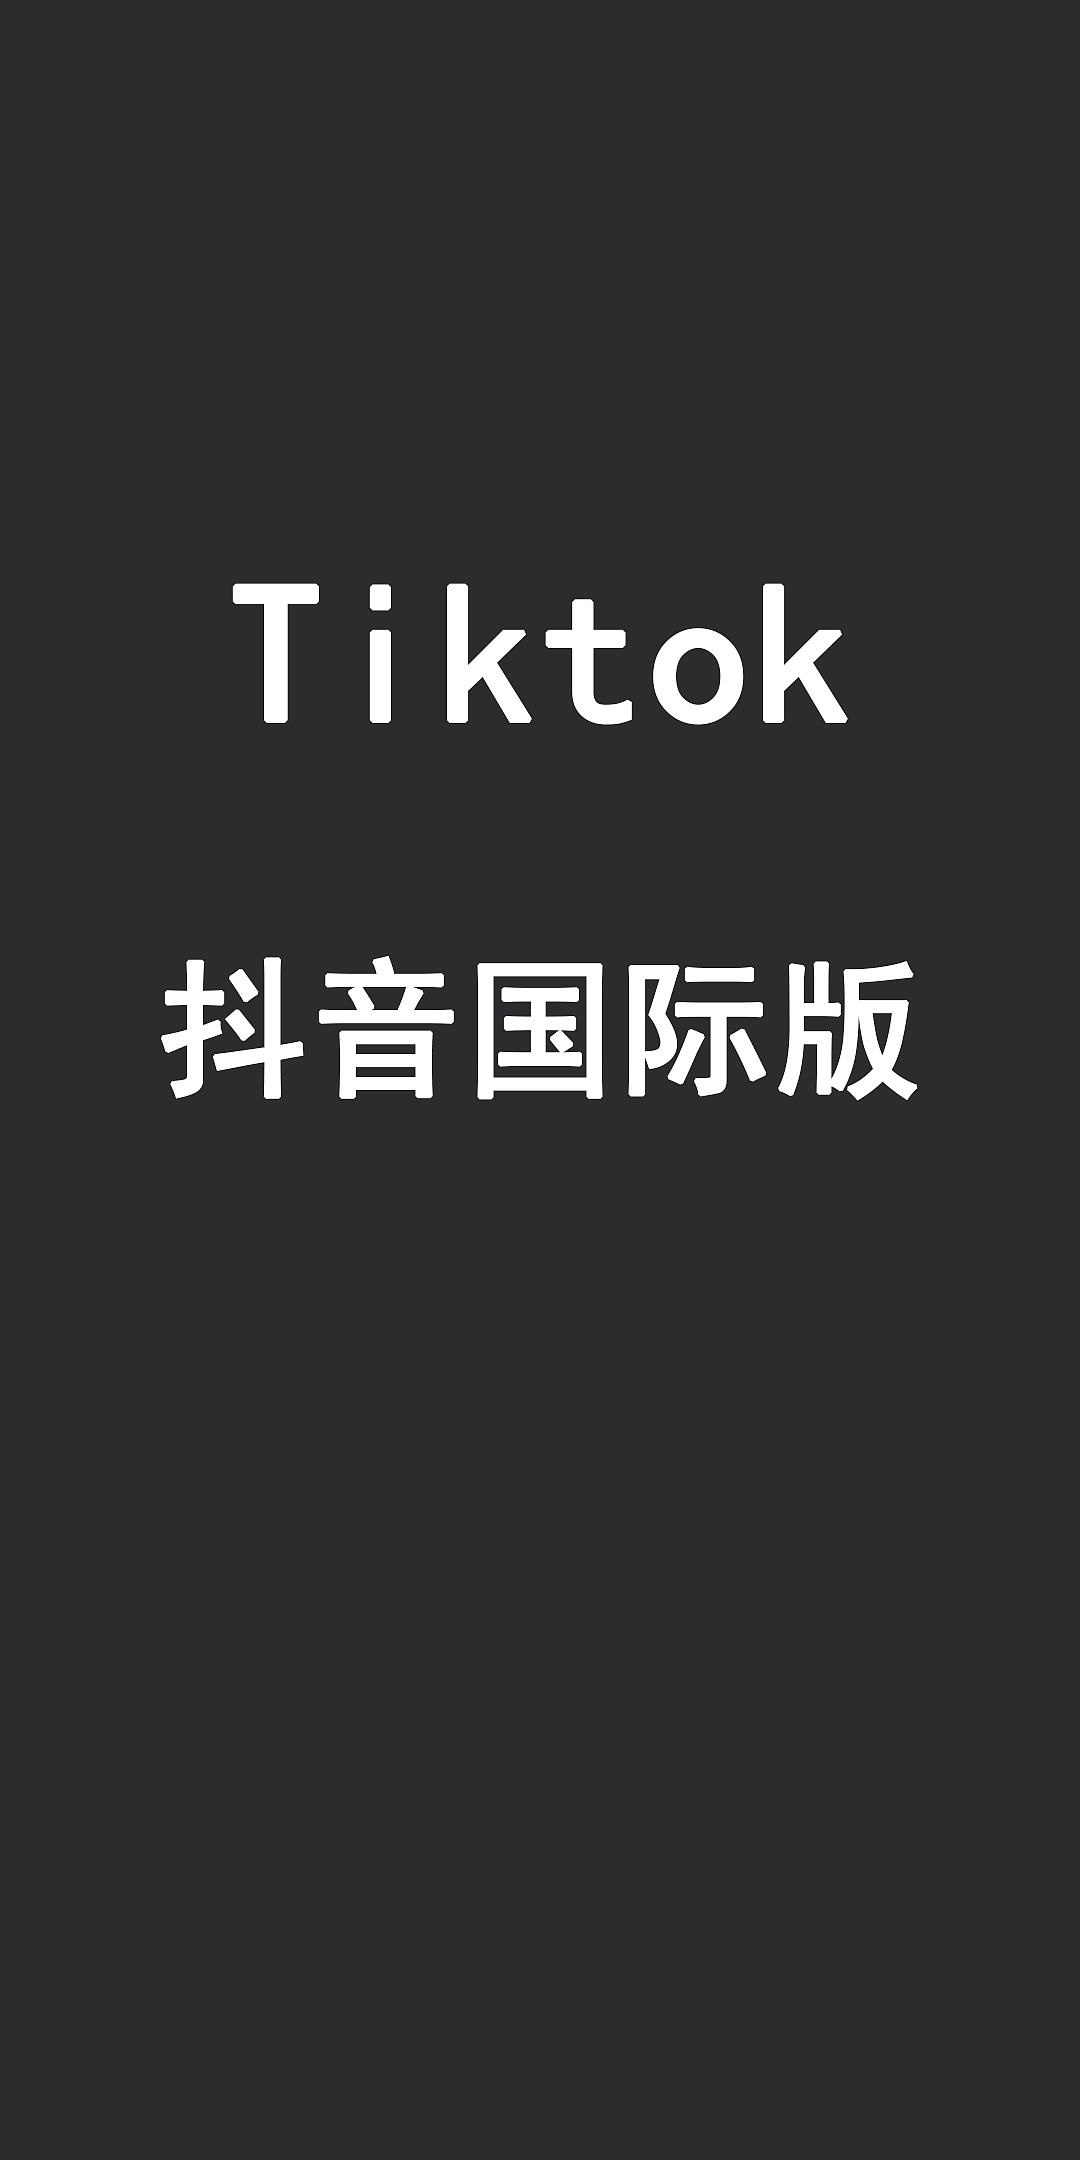 国际版抖音TikTok下载教程(包含破解版、安卓版、ios版)